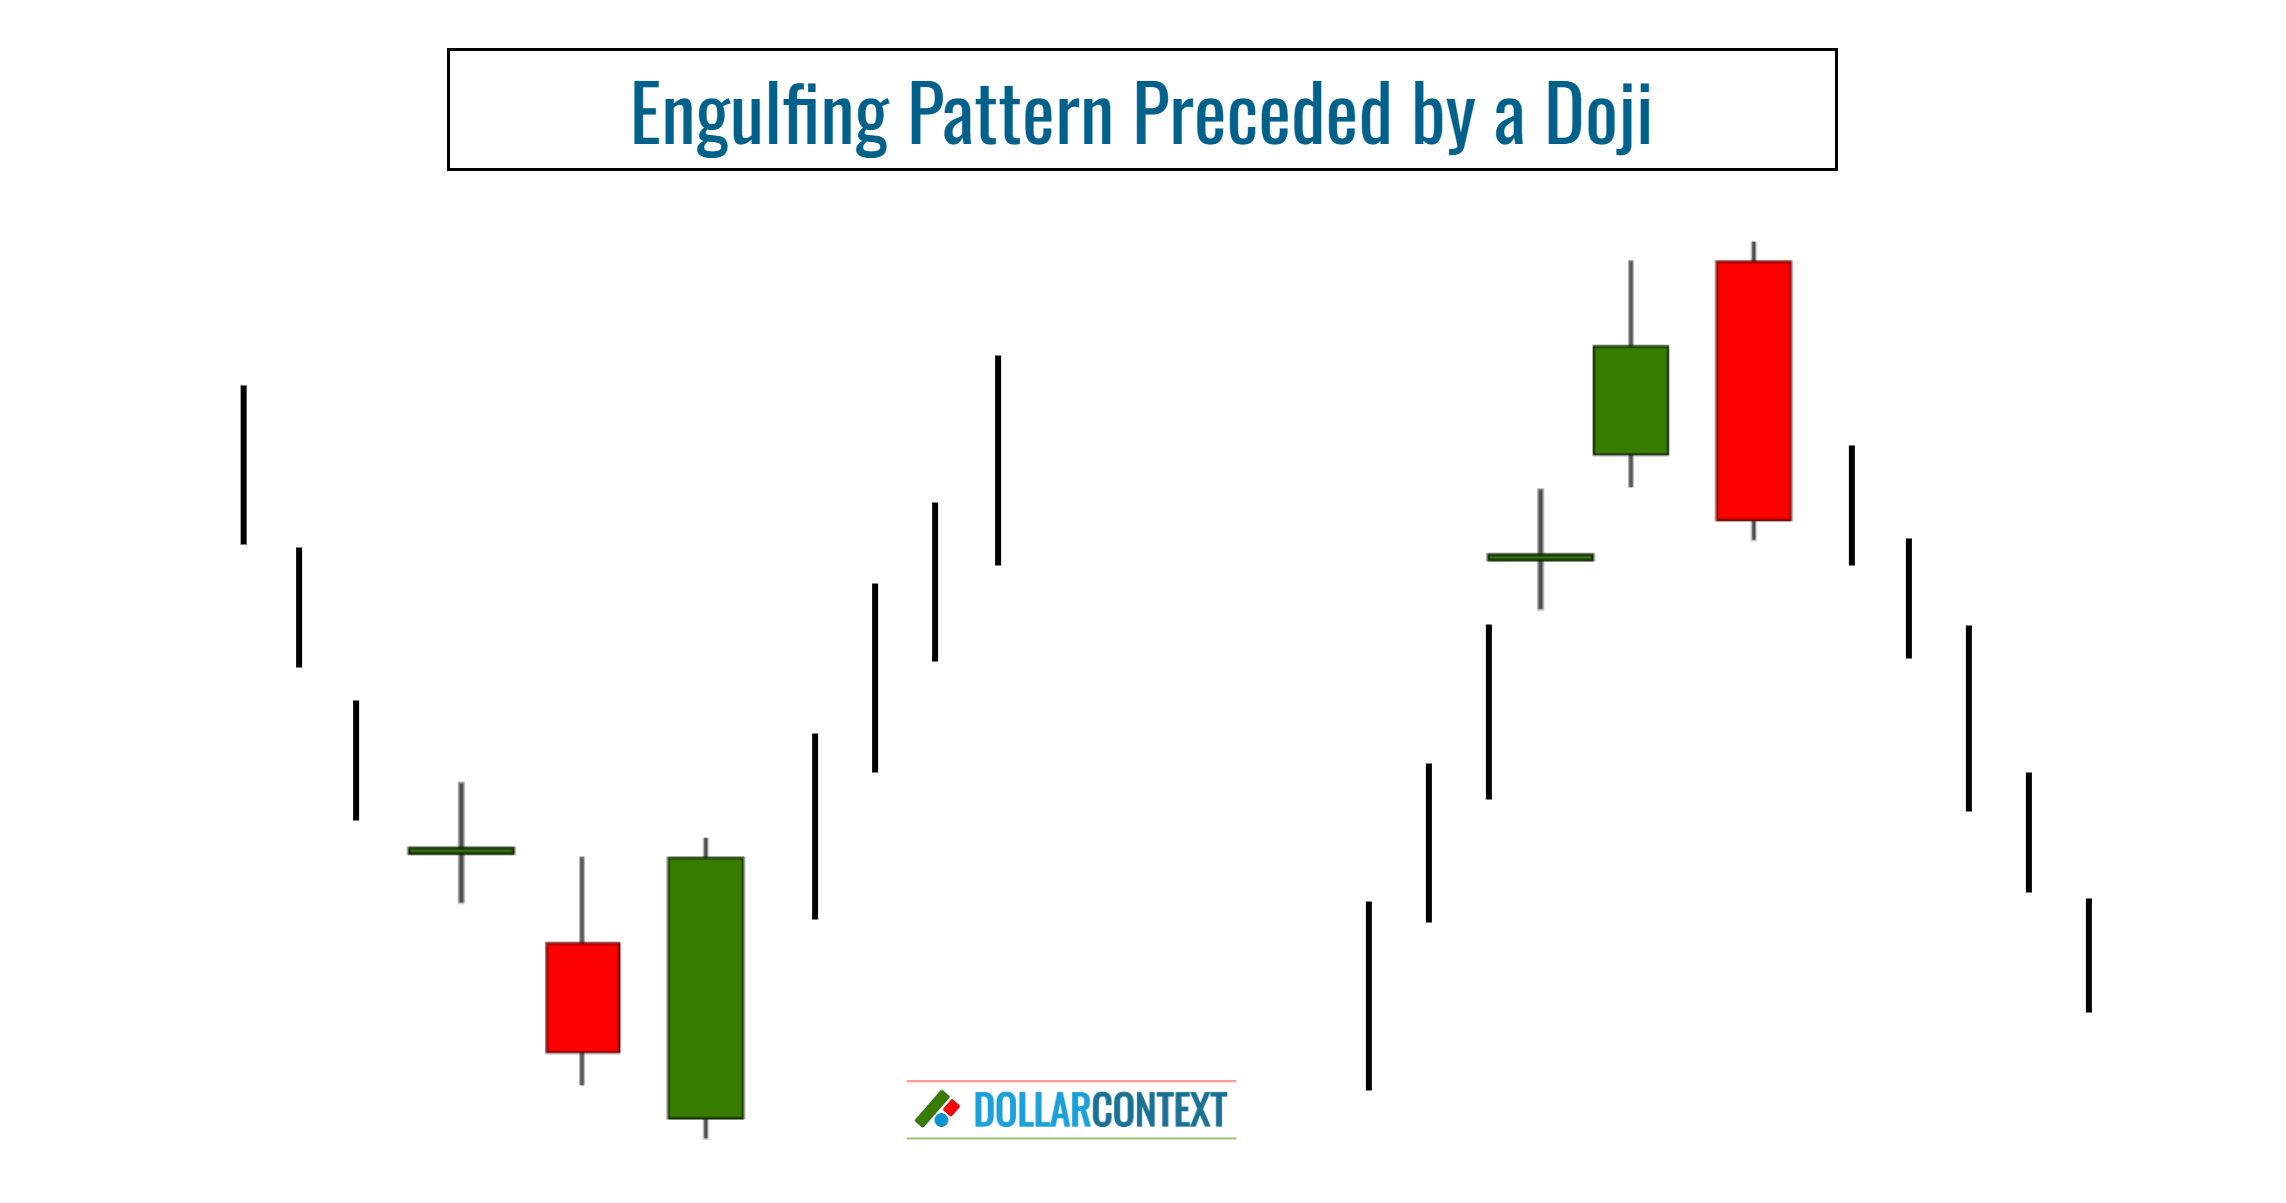 Engulfing Pattern Preceded by a Doji